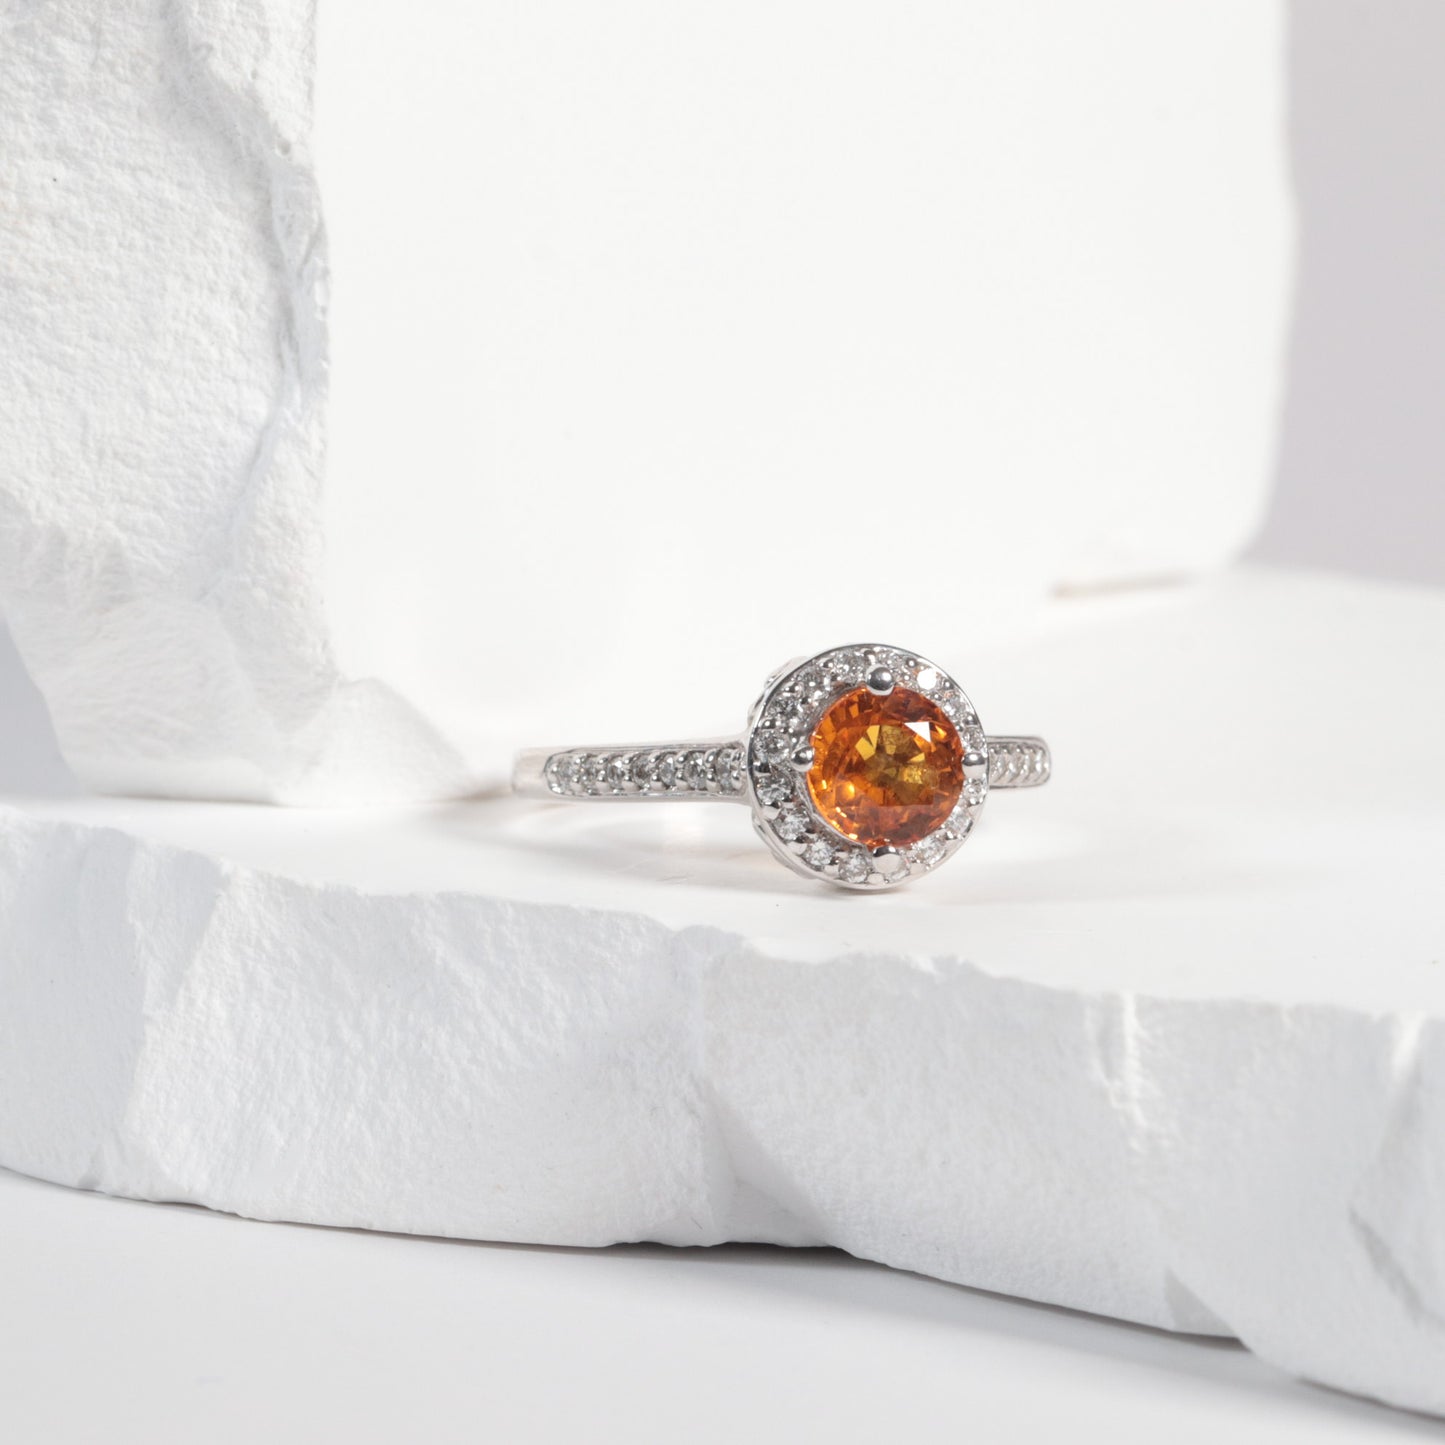 'Phoenix' Montana Sapphire Ring